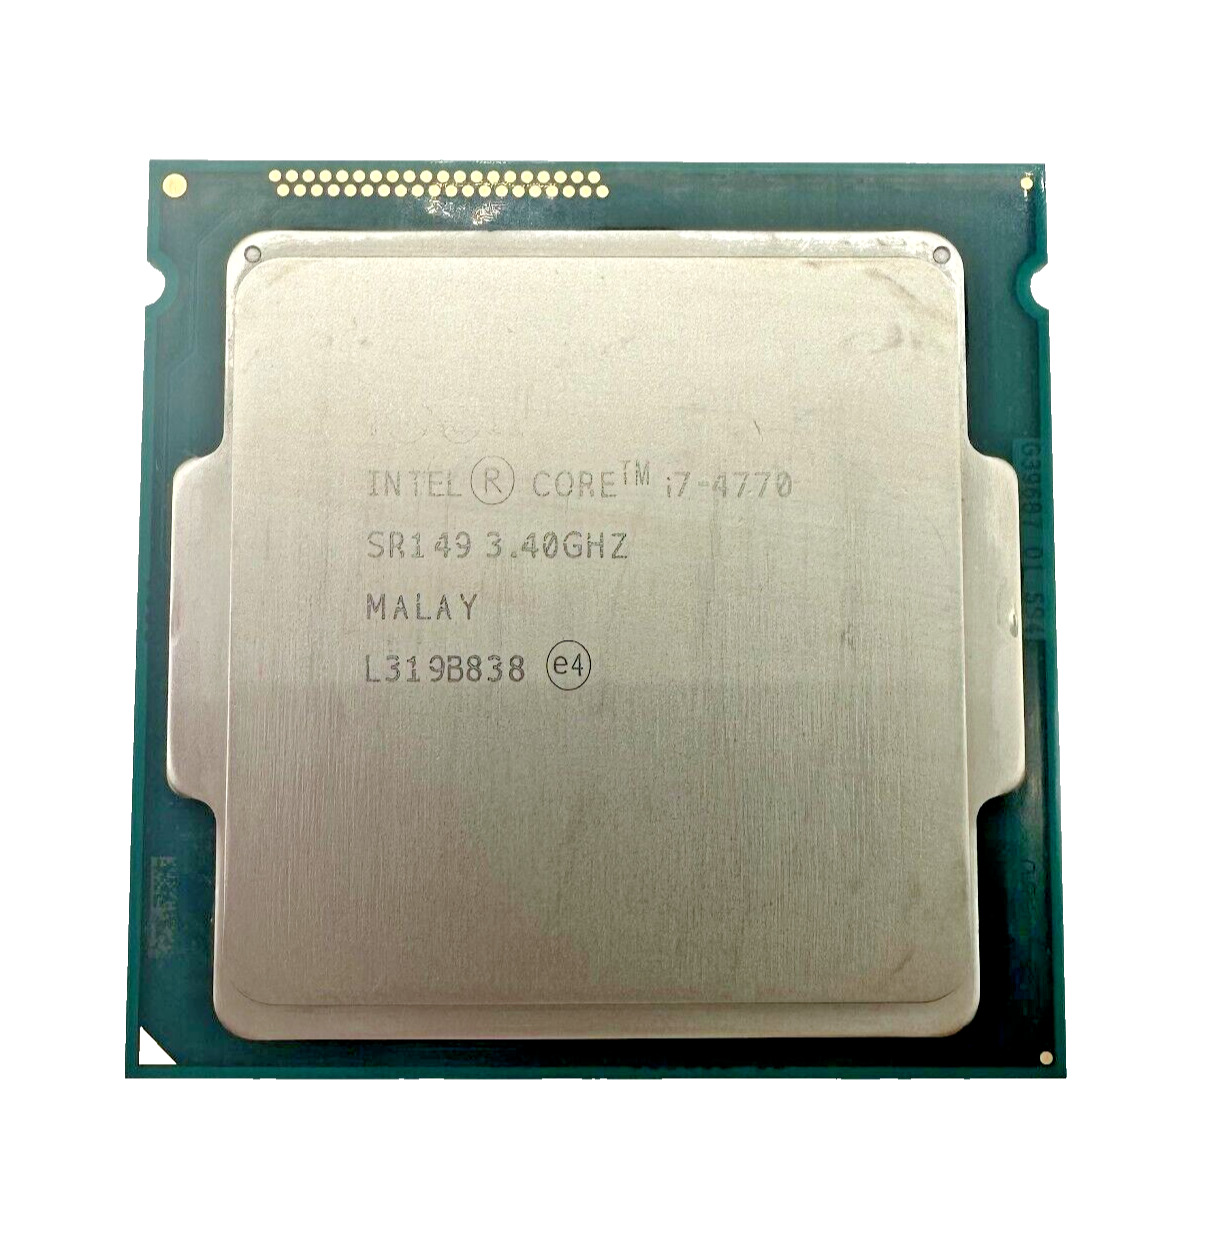 Intel Core i7-4770 3.40GHz Quad-Core CPU Processor SR149 LGA 1150 Socket